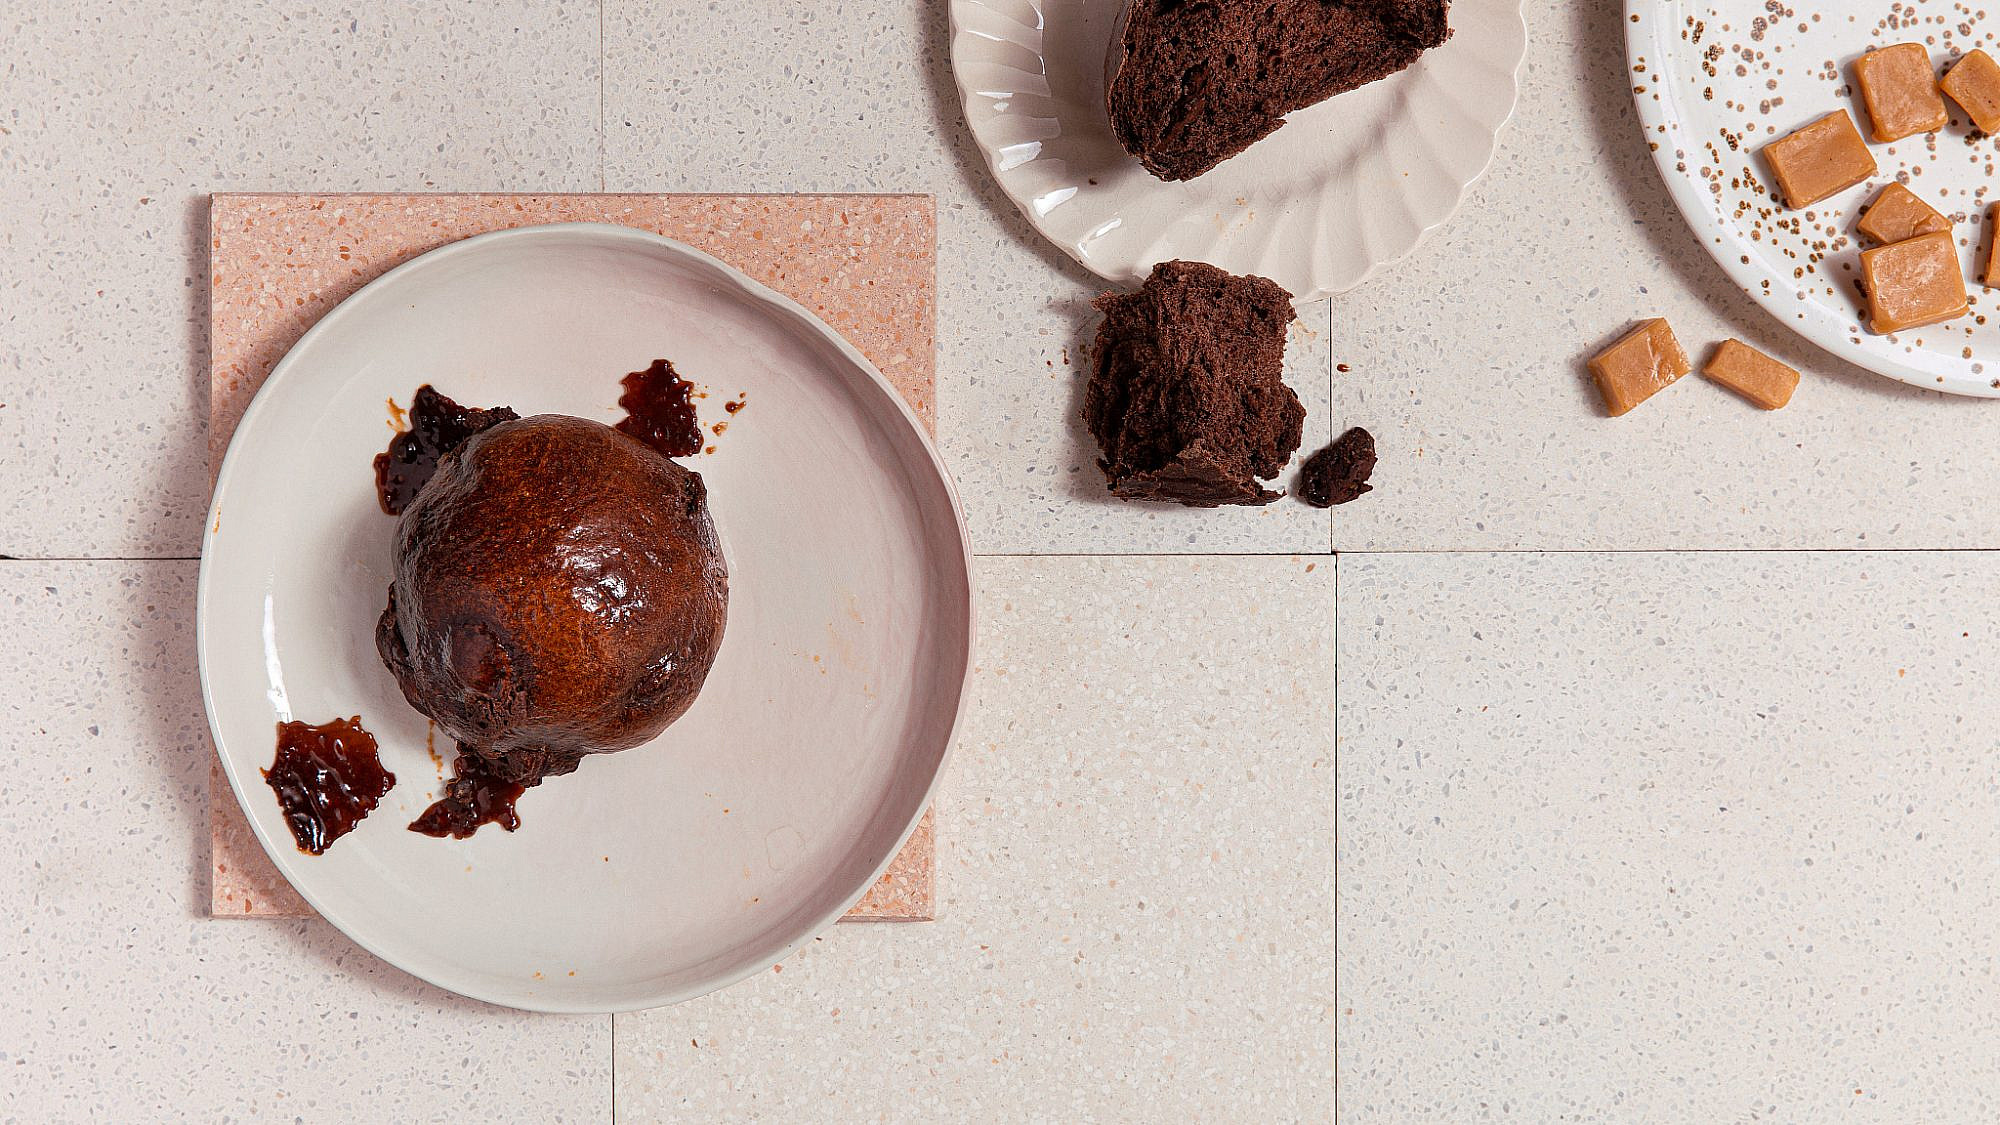 לחמניות שוקולד וטופי קרמל של ליאור משיח. צילום: טל סיון ציפורן. סטיילינג: דיאנה לינדר